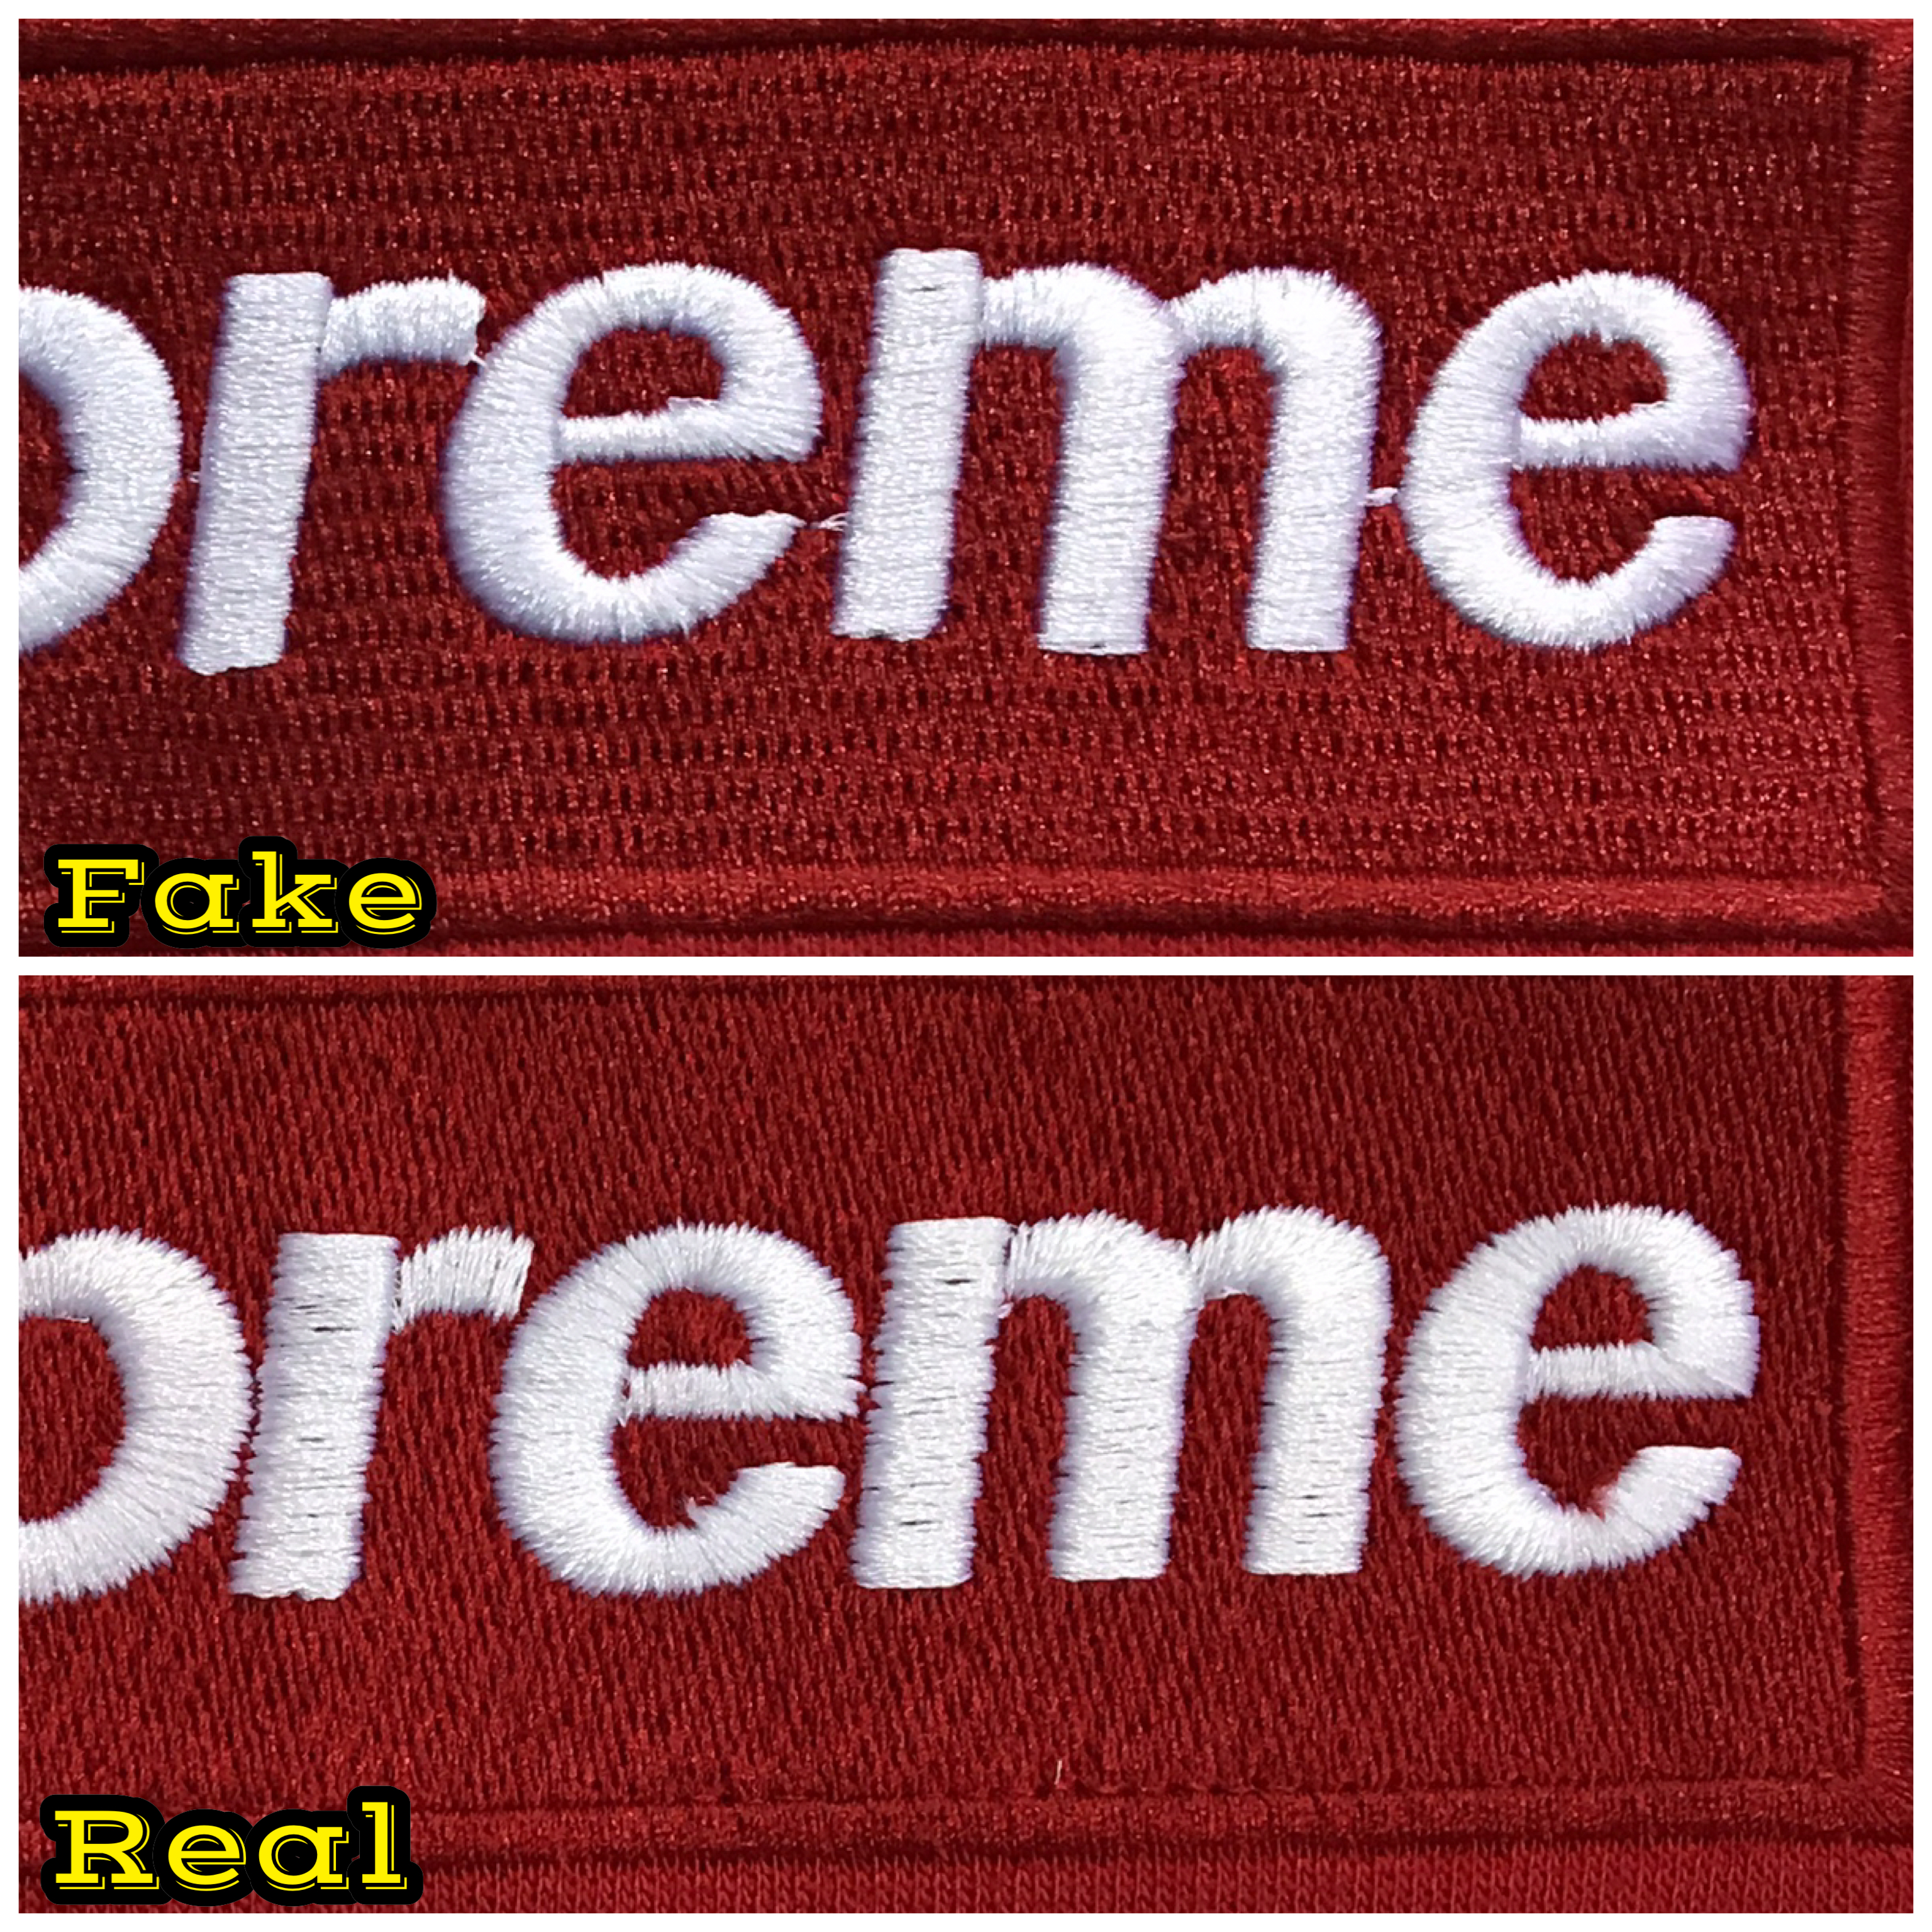 Fake supreme box Logos